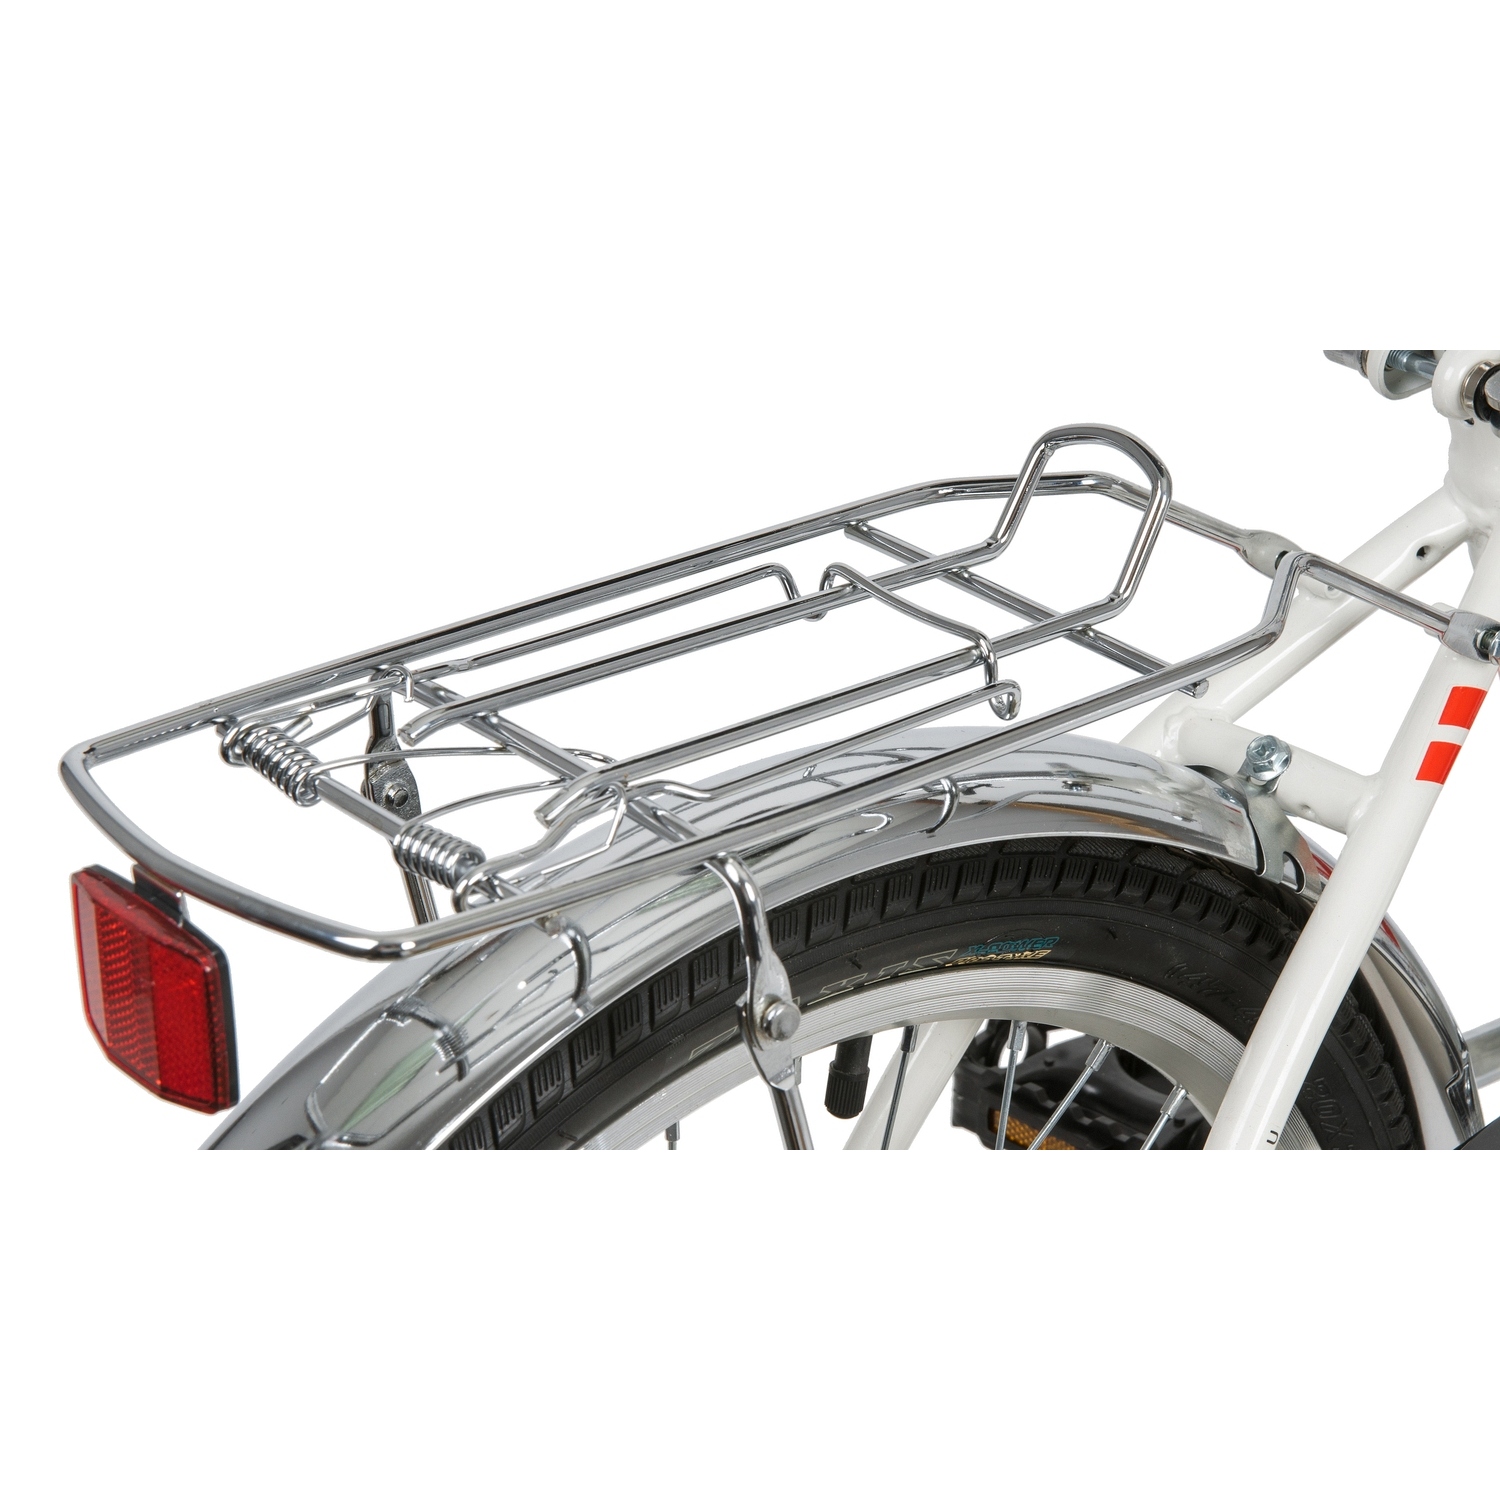 Складной велосипед Novatrack TG-20 Classic 1sp. V-brake, год 2020, цвет Белый